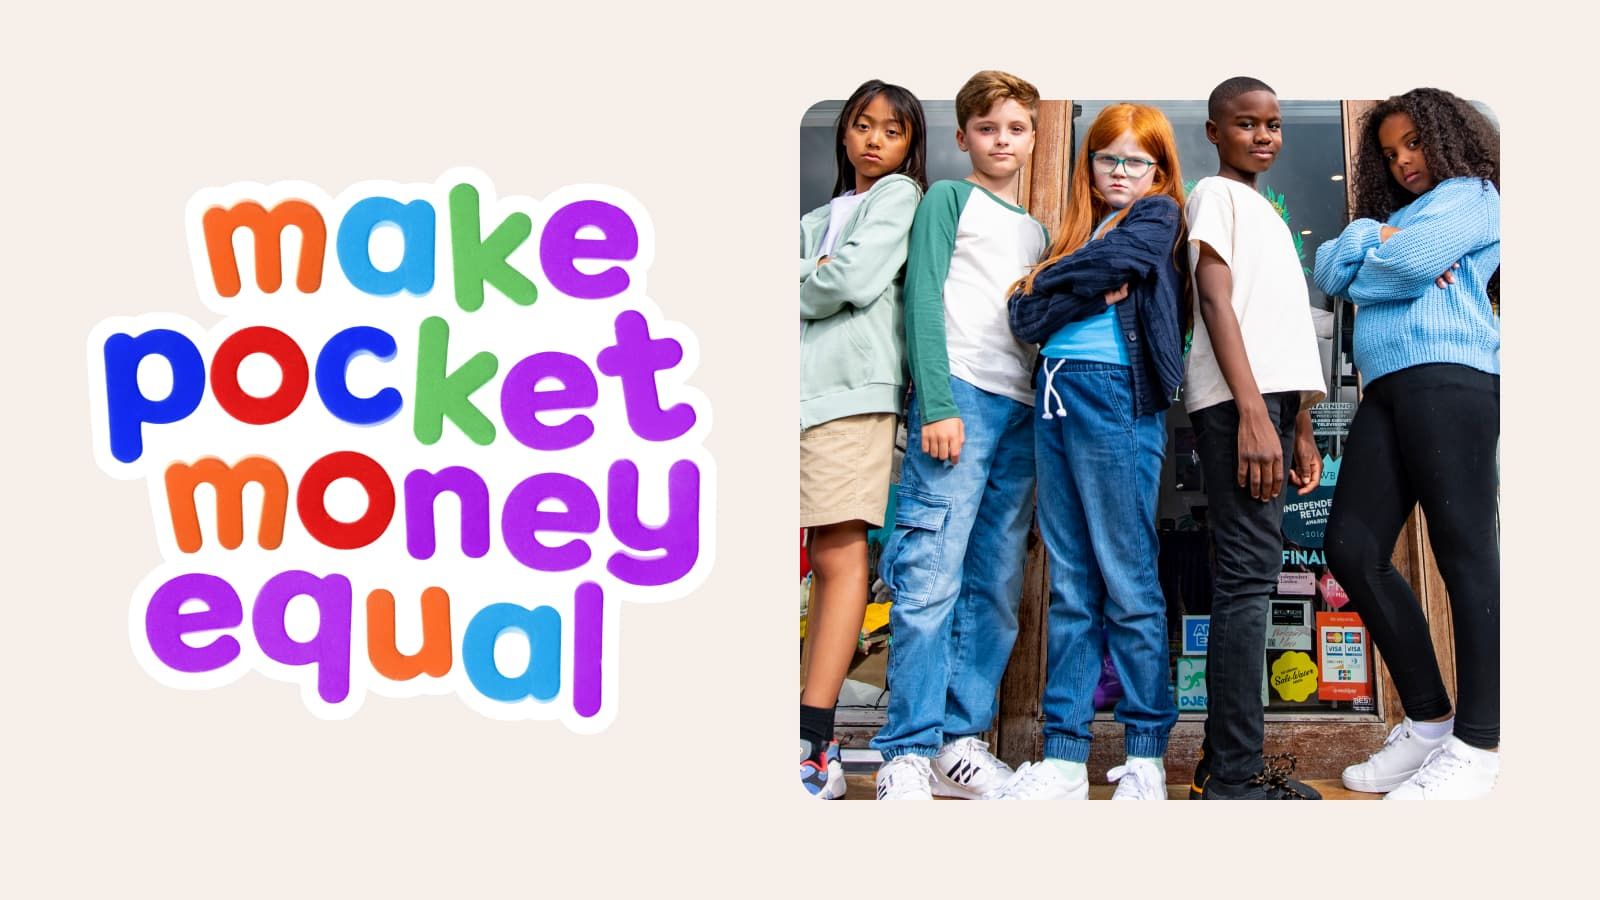 It’s time to Make Pocket Money Equal header image